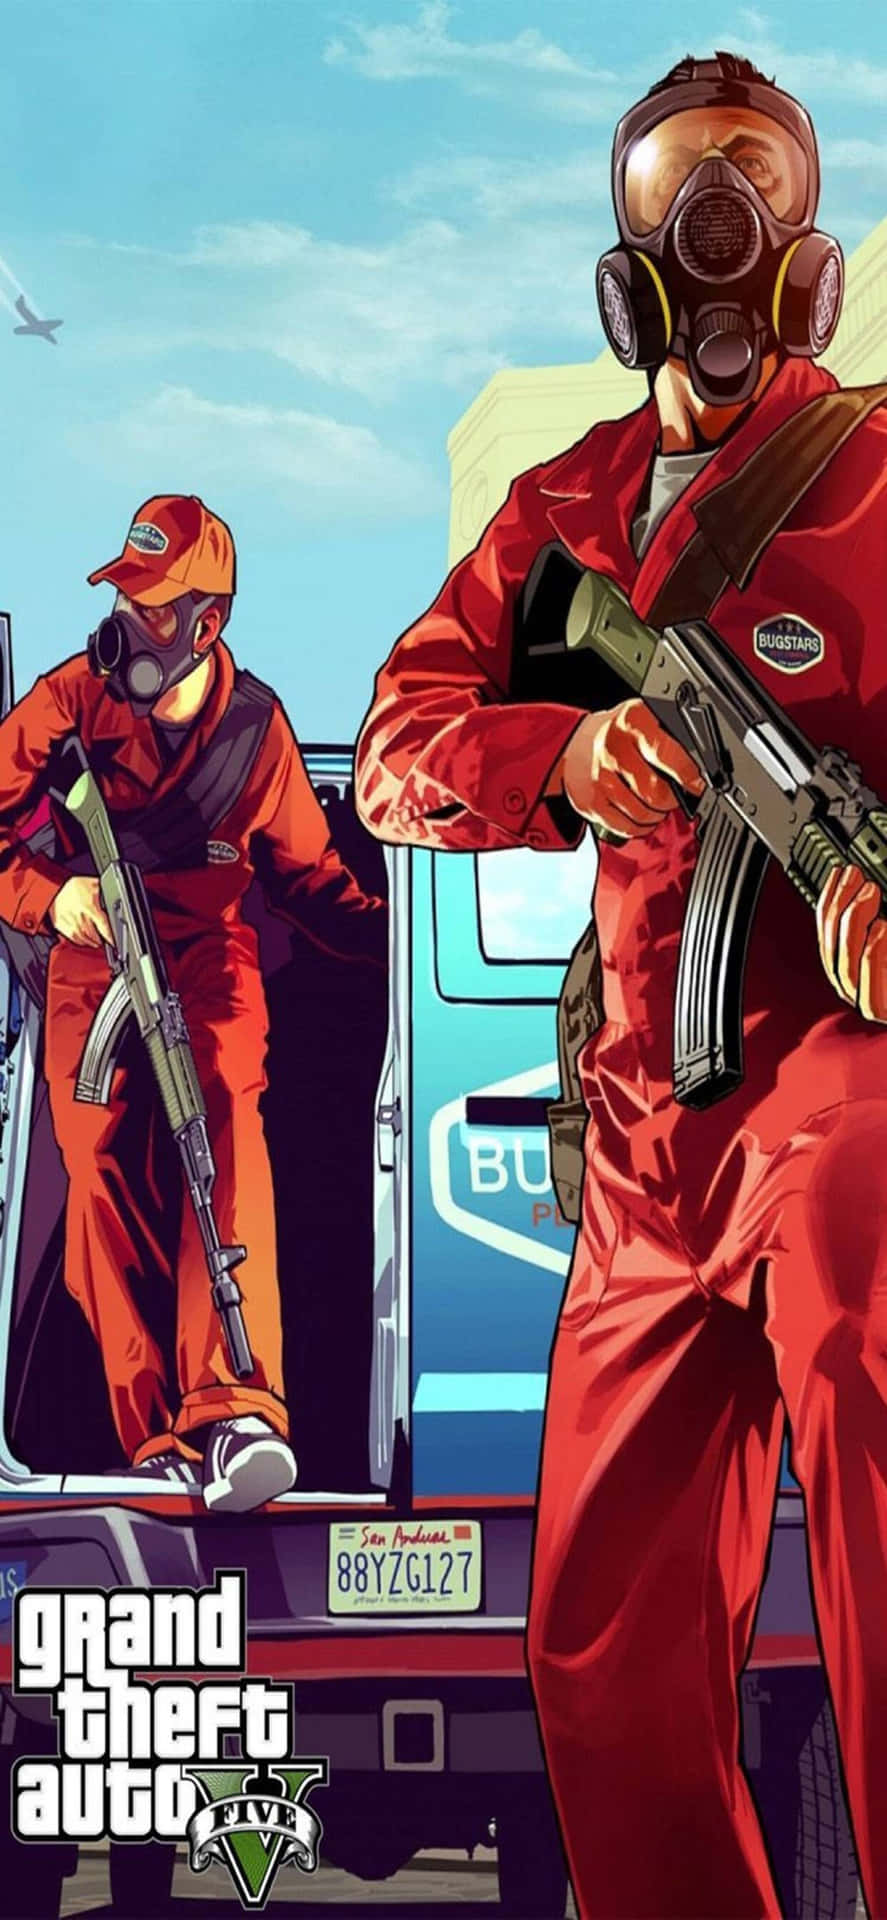 Iphonexs Max Bakgrundsbild Med Grand Theft Auto V Rånare I Röda Kostymer.